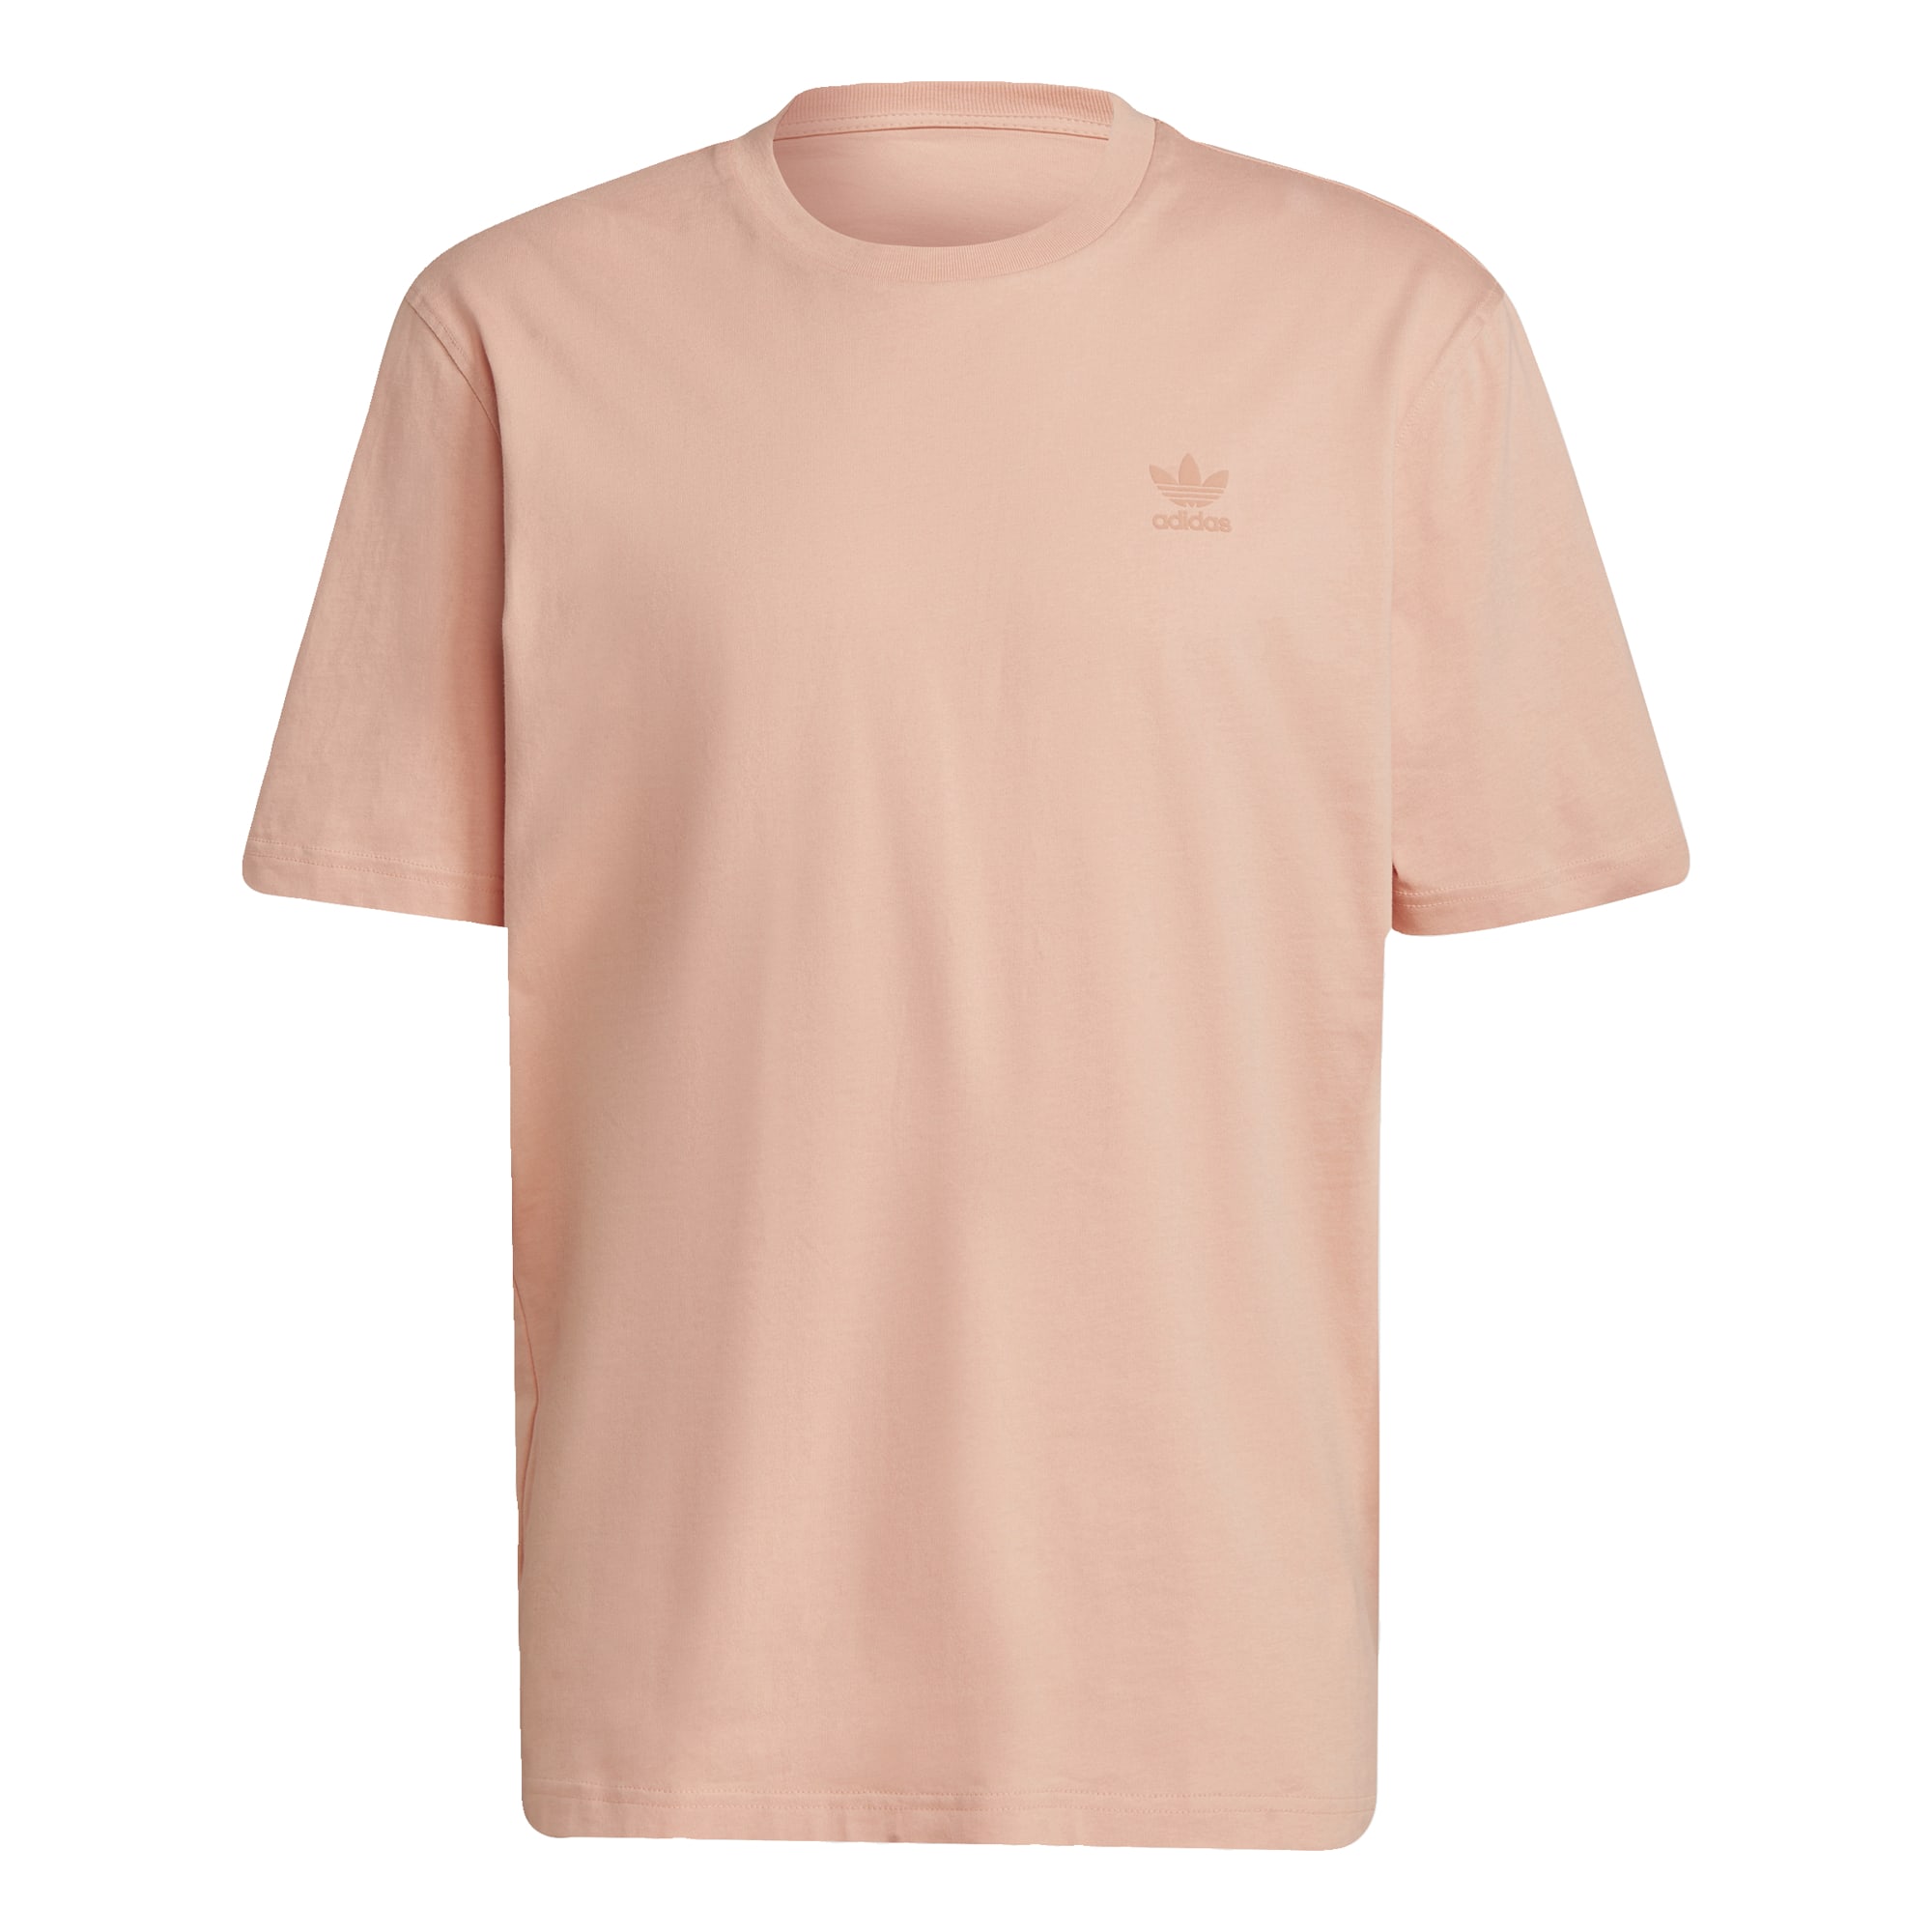 HFVx2 Bardziej zrównoważony ADIDAS ORIGINALS Koszulka w kolorze Różowy Pudrowy, Stary Różm 